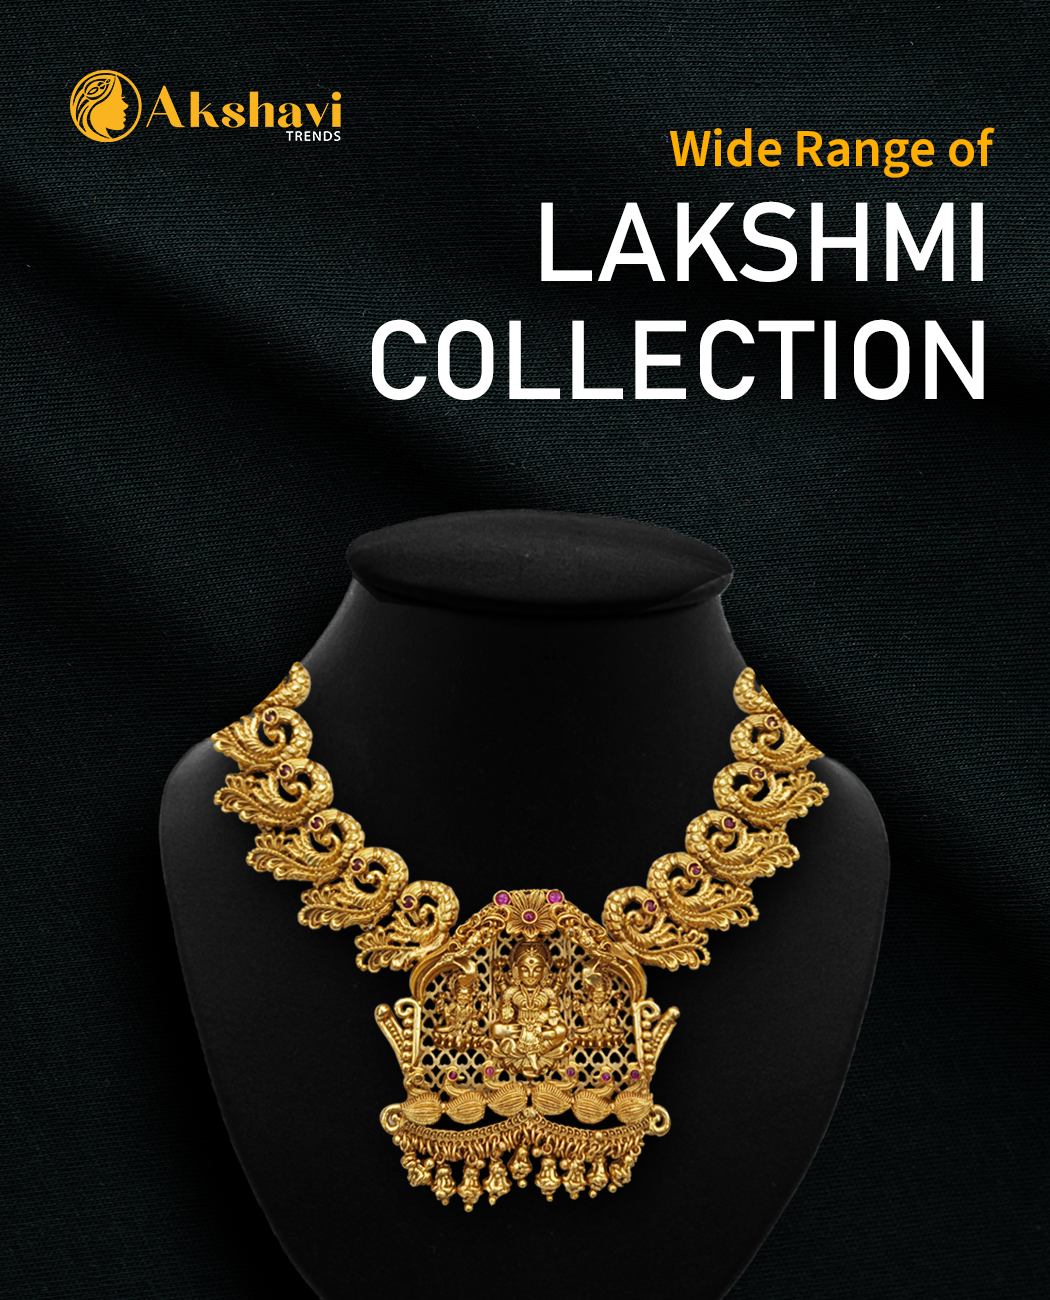 Lakshmi collection mobile